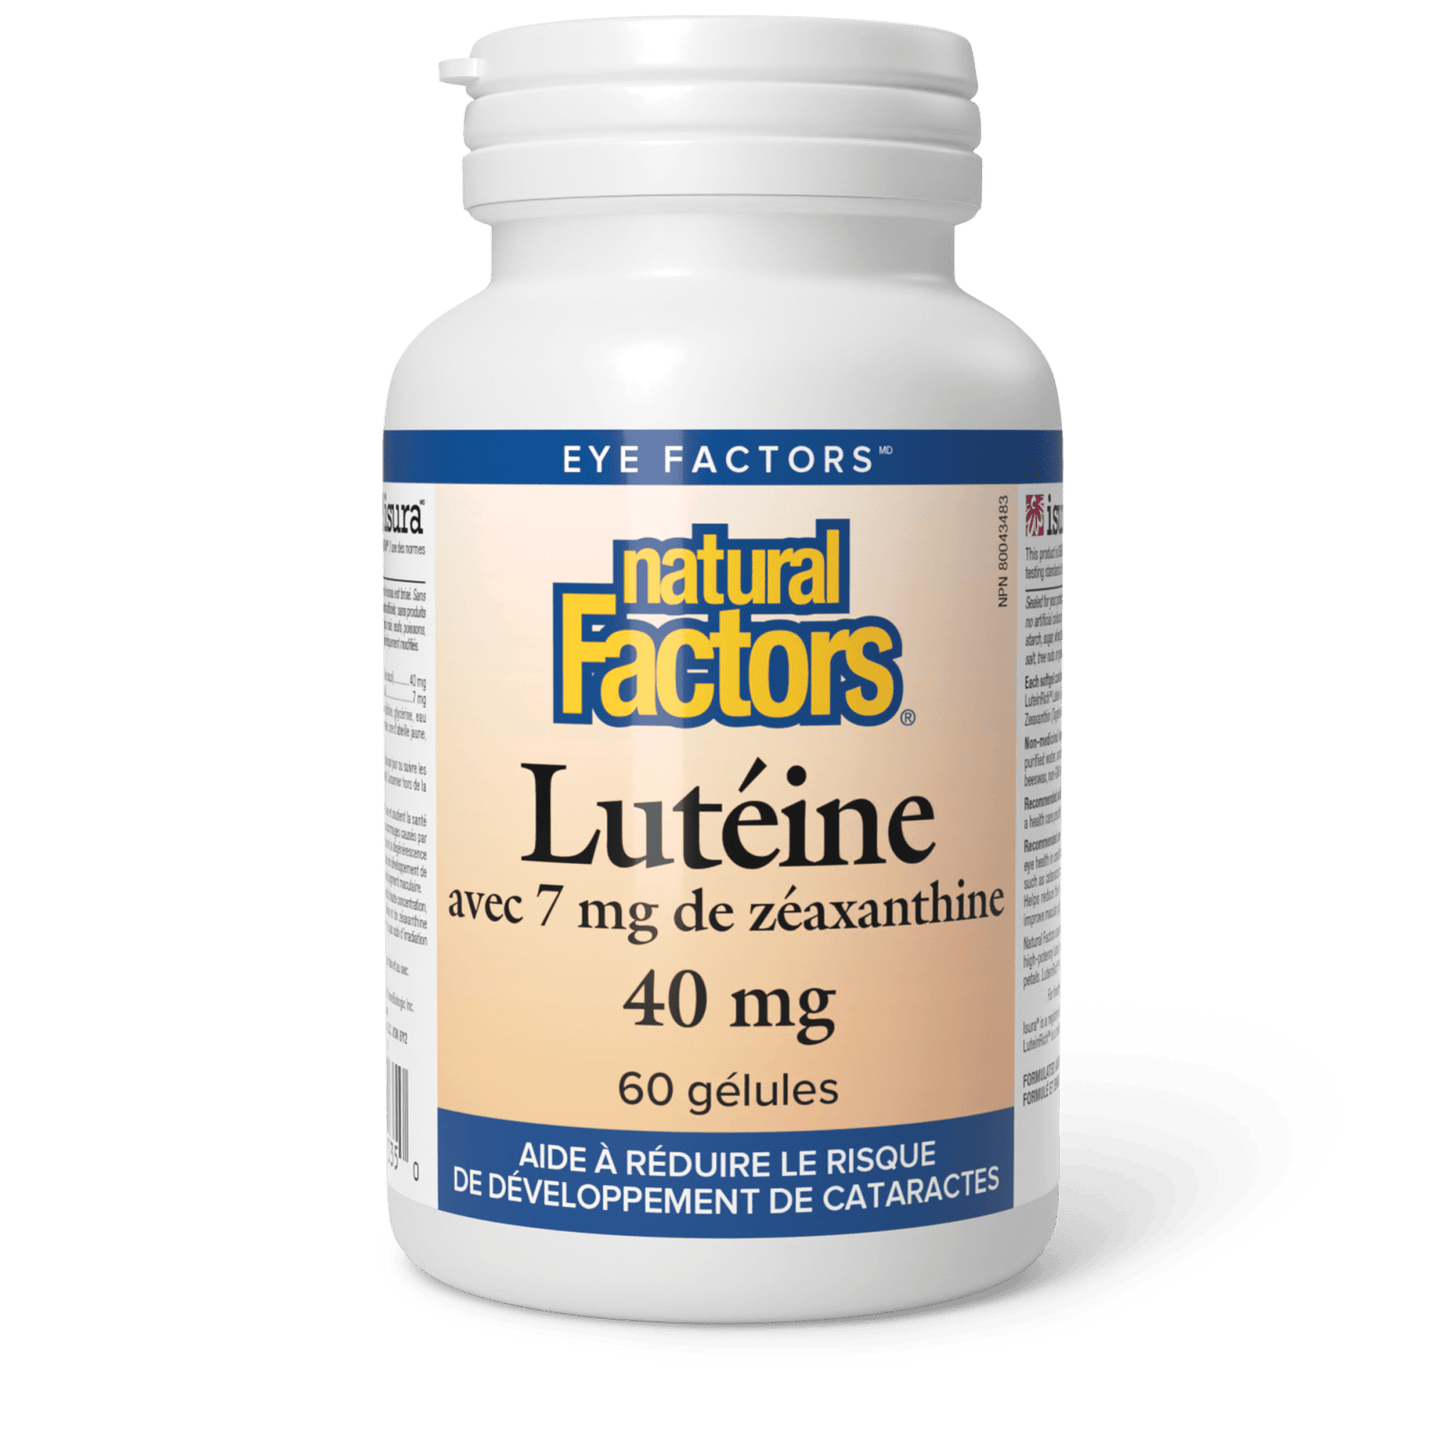 Lutéine 40 mg, Natural Factors|v|image|1035